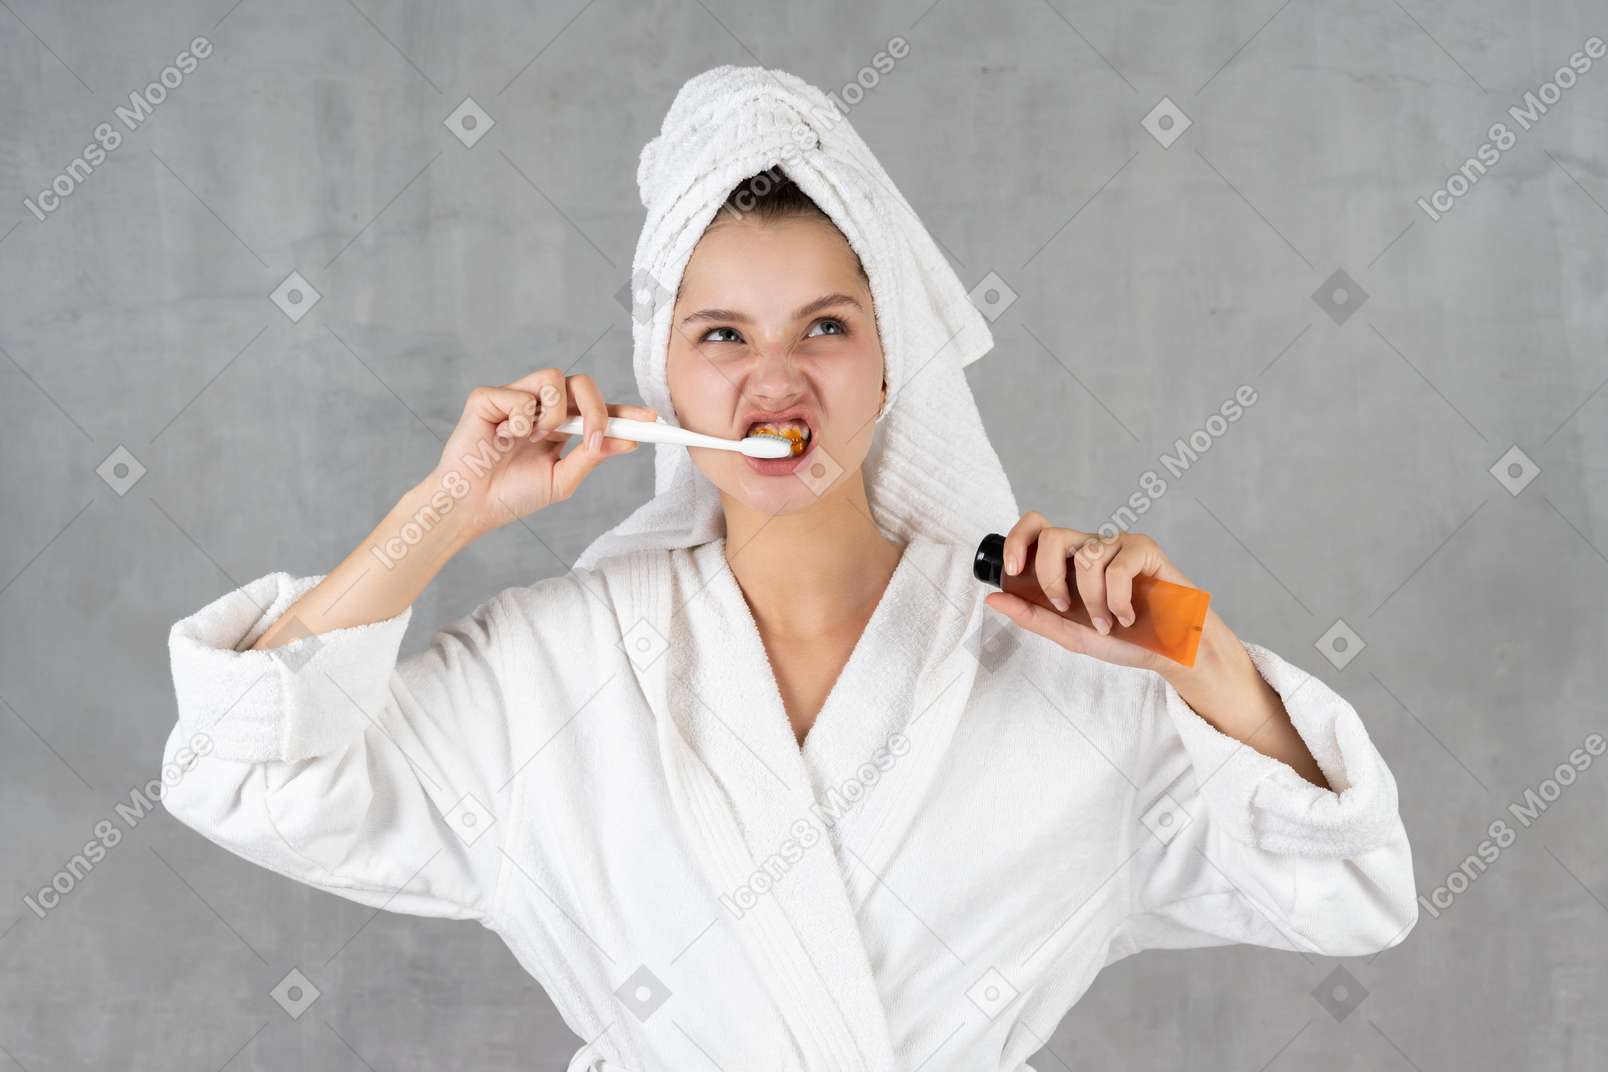 歯磨きをしながら顔をしかめるバスローブ姿の女性